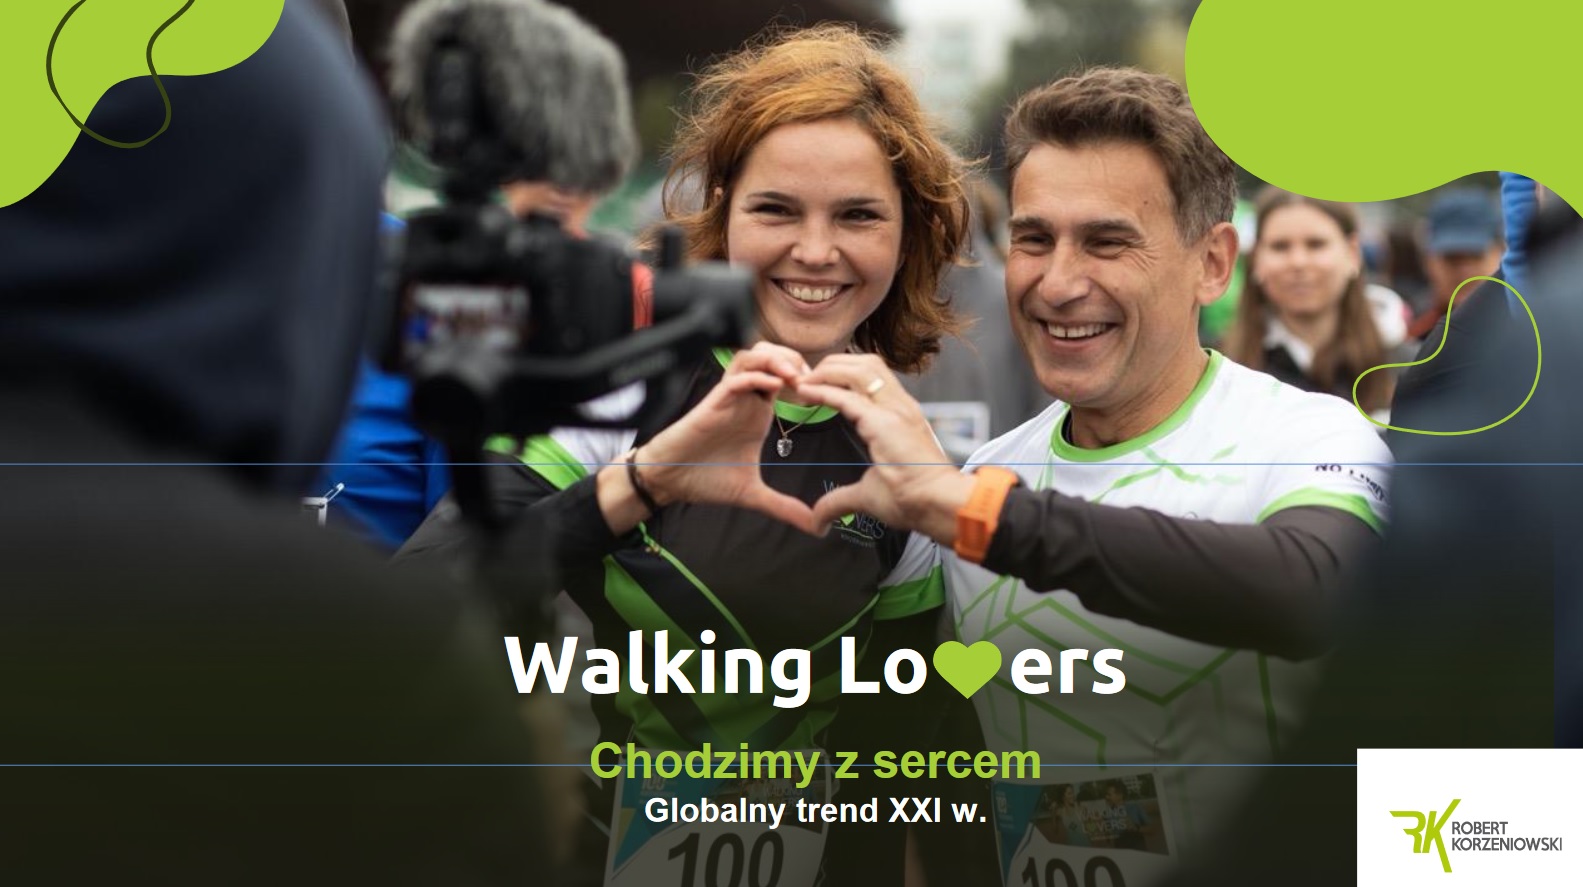 Chodzimy z sercem – globalny trend XXI w